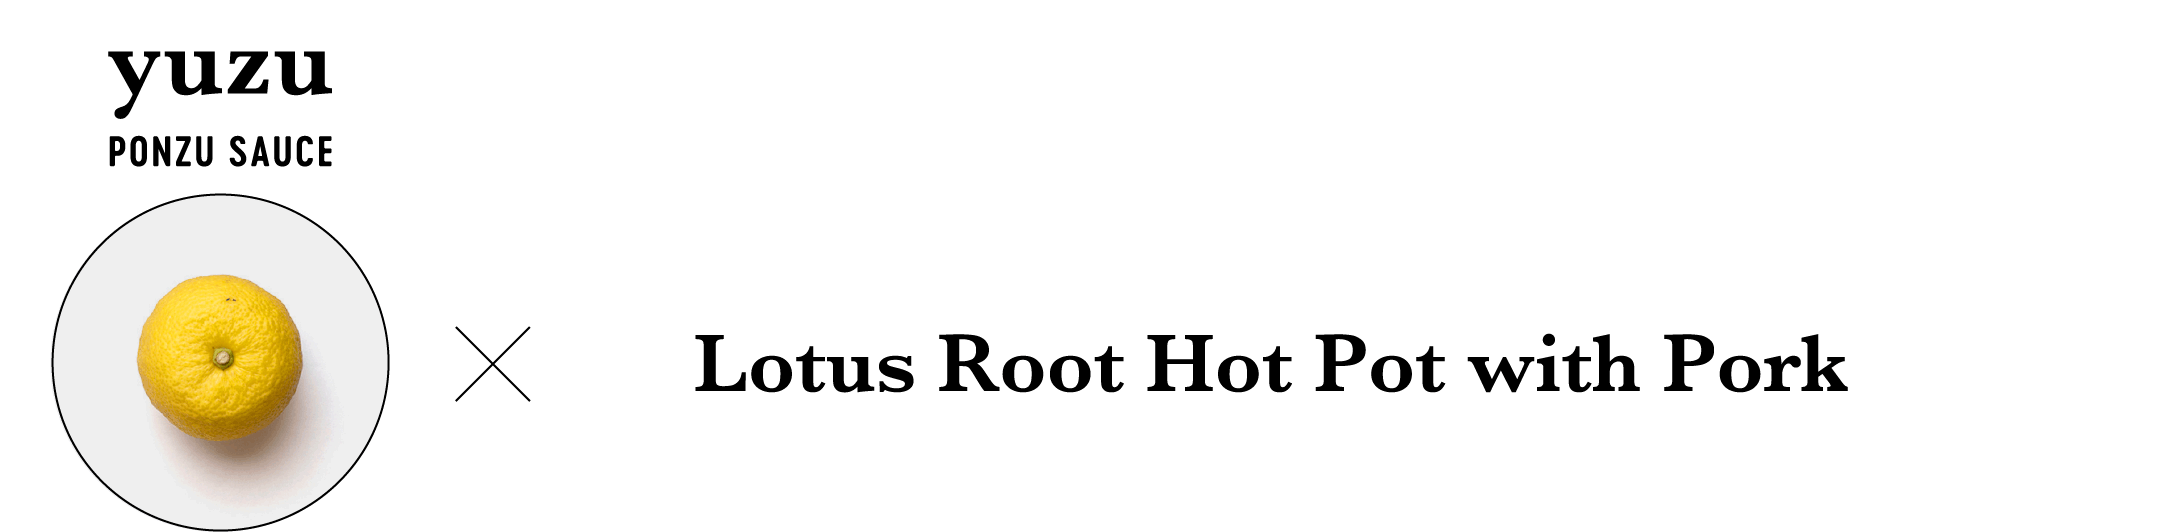 yuzu PONZU SAUCE Lotus Root Hot Pot with Pork